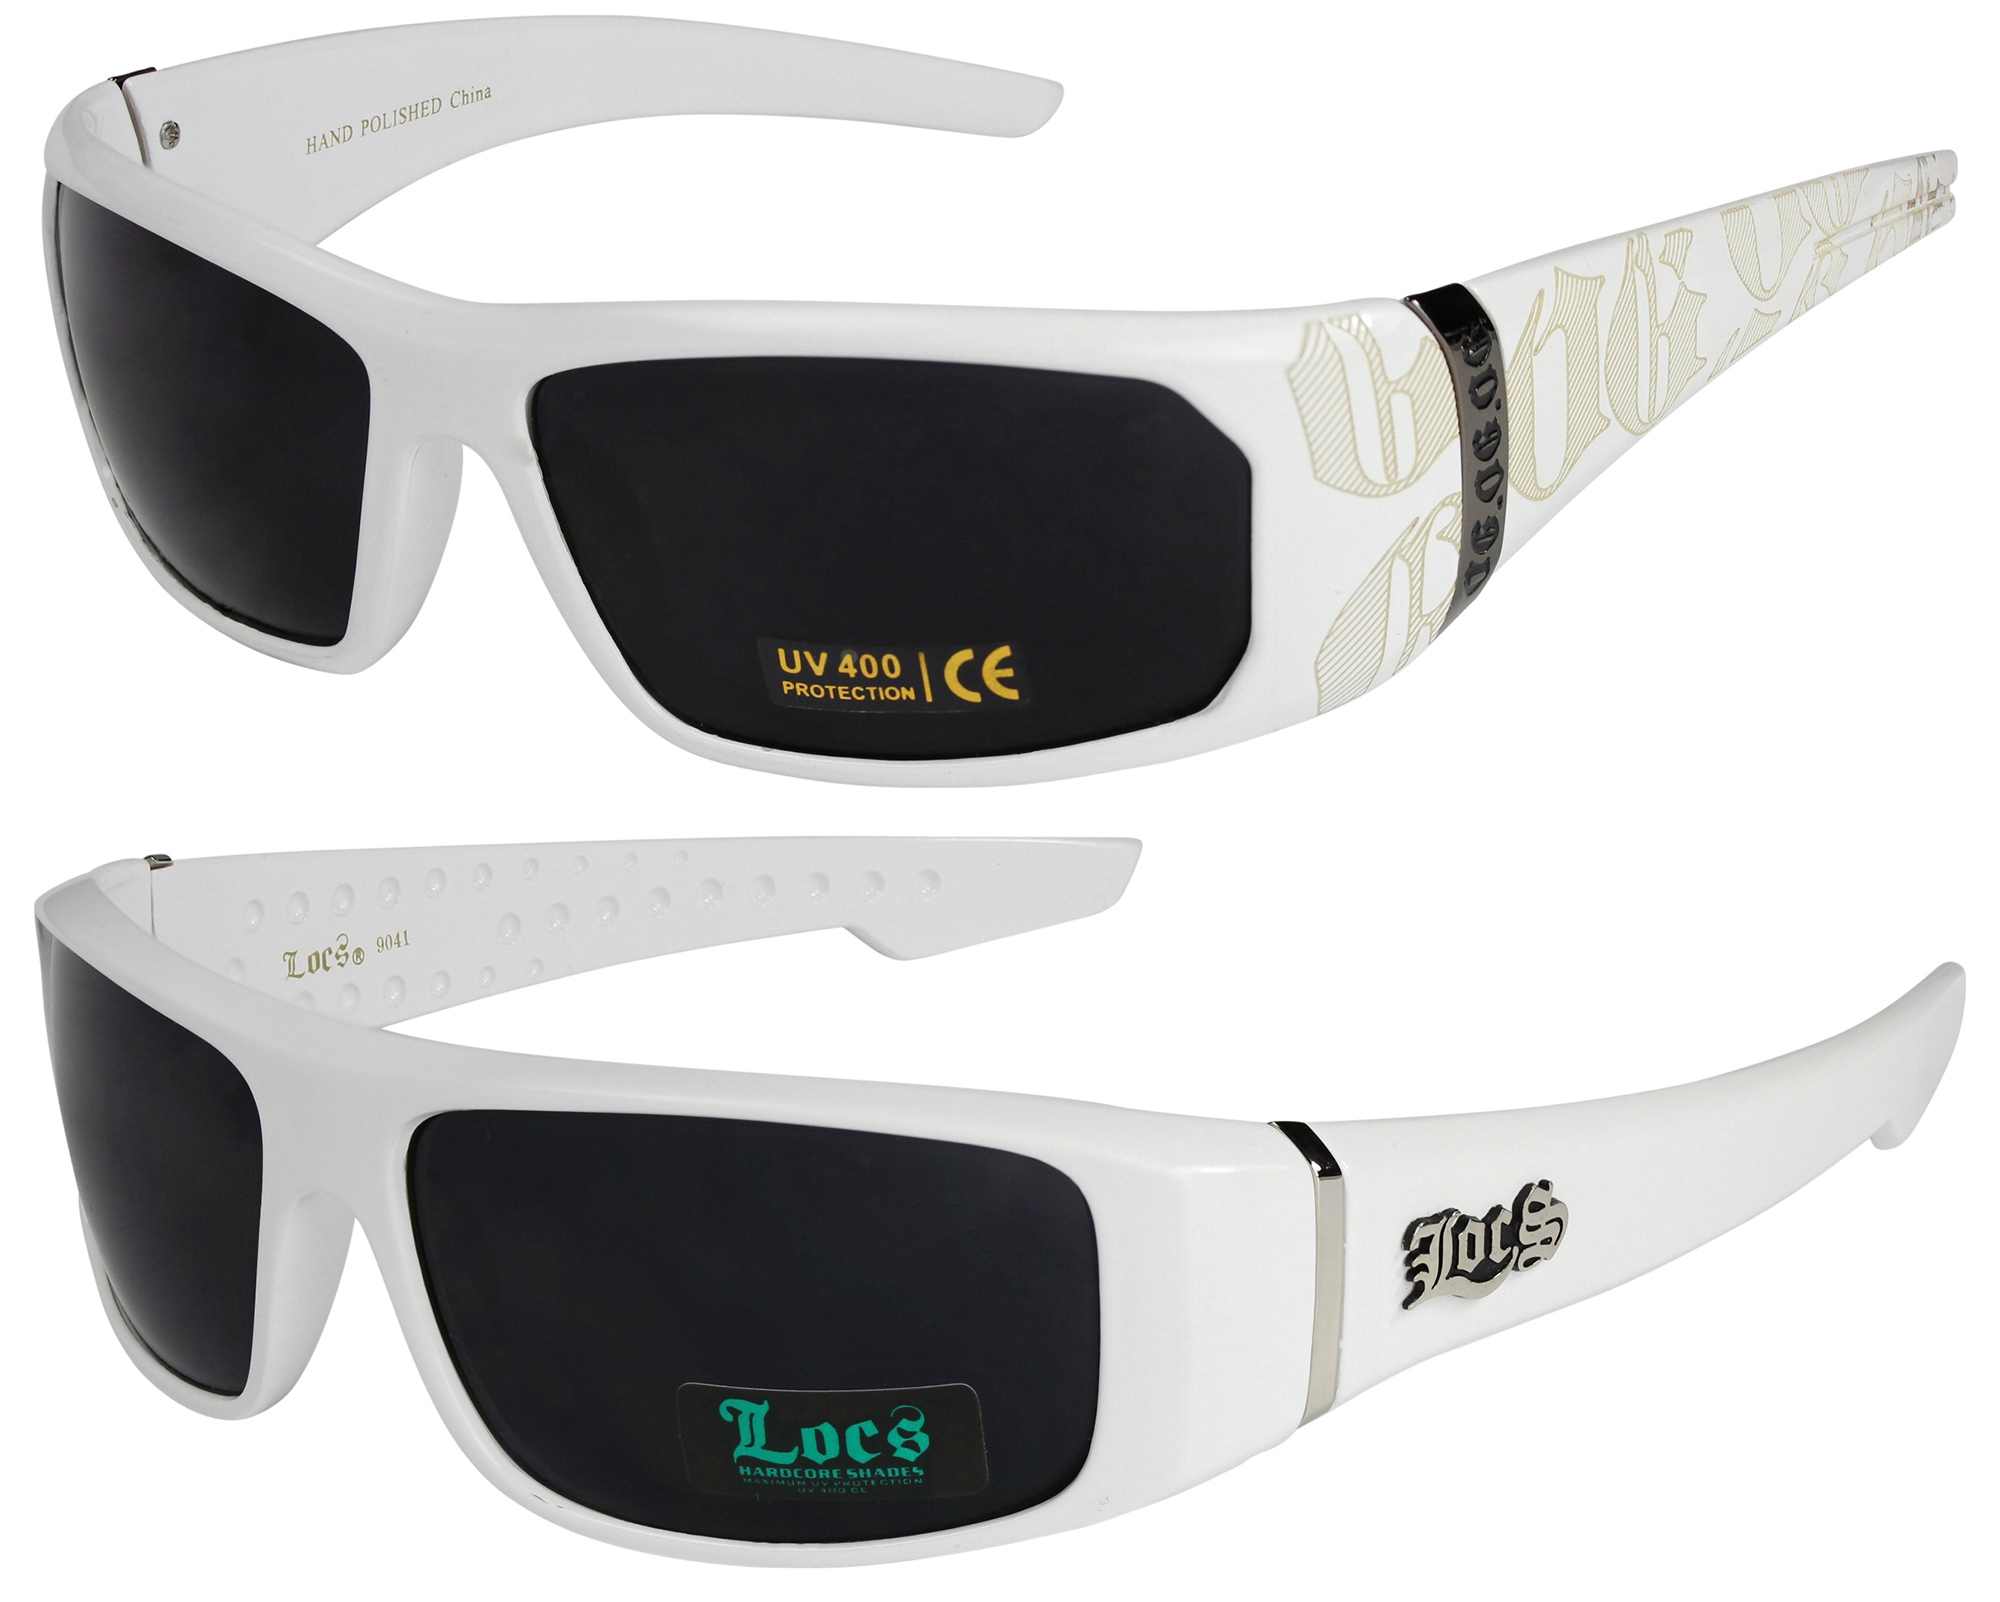 2er Pack Locs 9052 Choppers Rad Brille Sonnenbrille Herren Damen schwarz weiß 